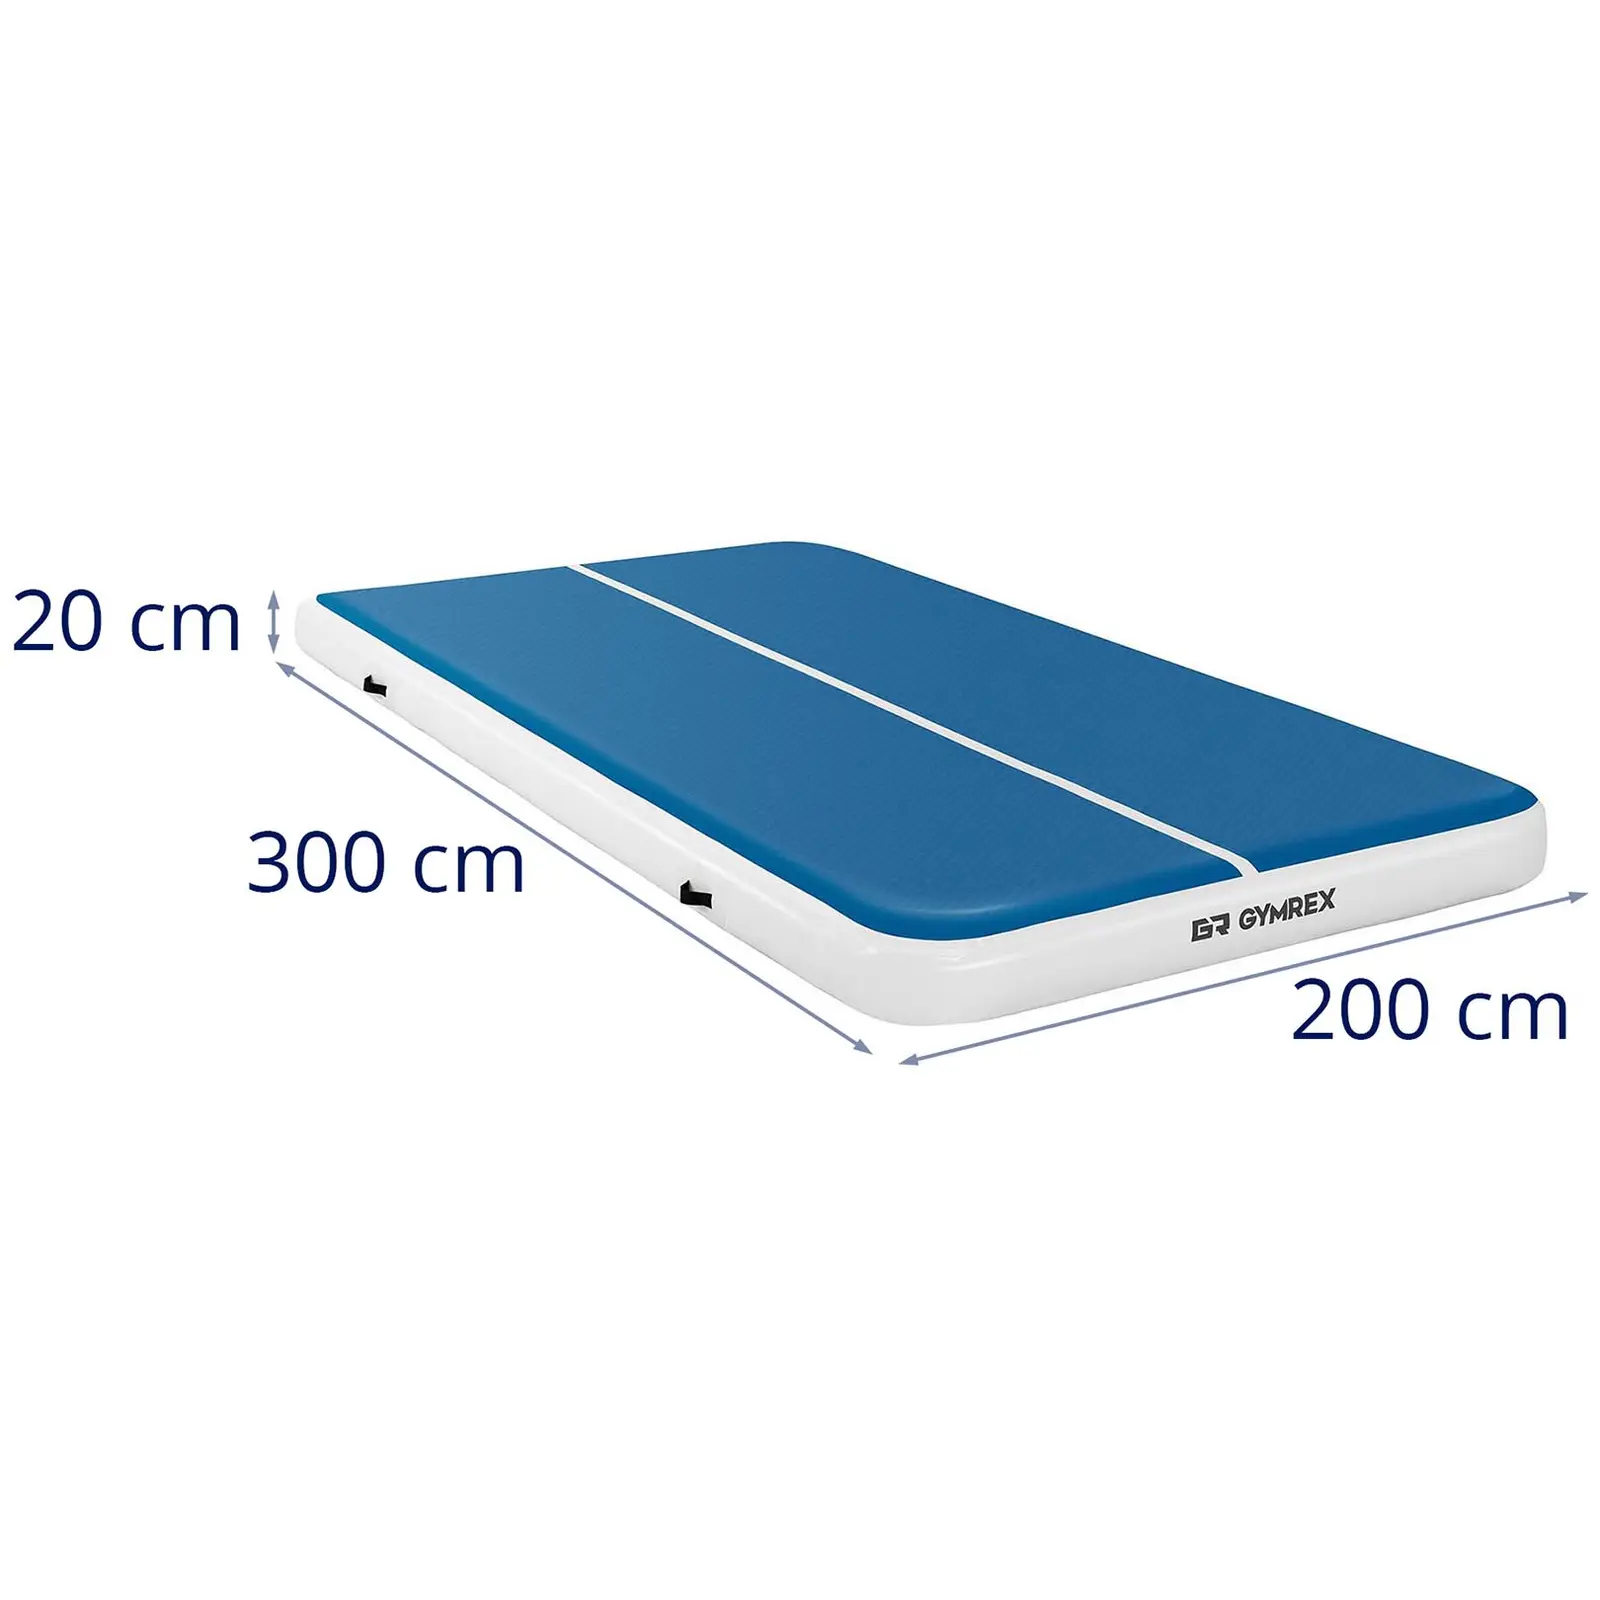 Φουσκωτό στρωματάκι γυμναστικής - 300 x 200 x 20 cm - 300 kg - μπλε/λευκό